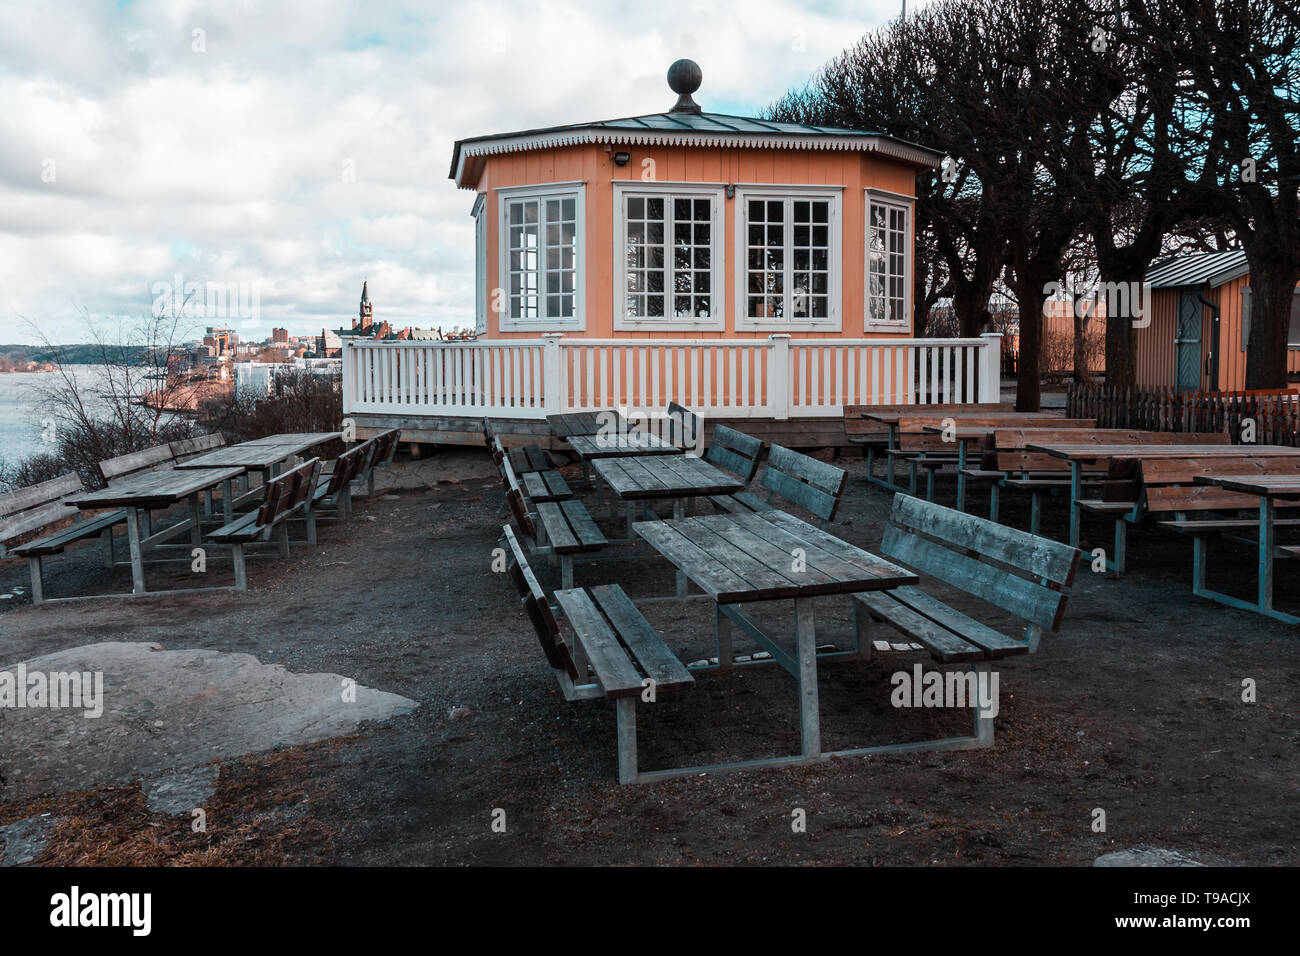 Petit café avec des tables et des bancs vides un jour de printemps avant la saison estivale commence, Stockholm Suède Banque D'Images